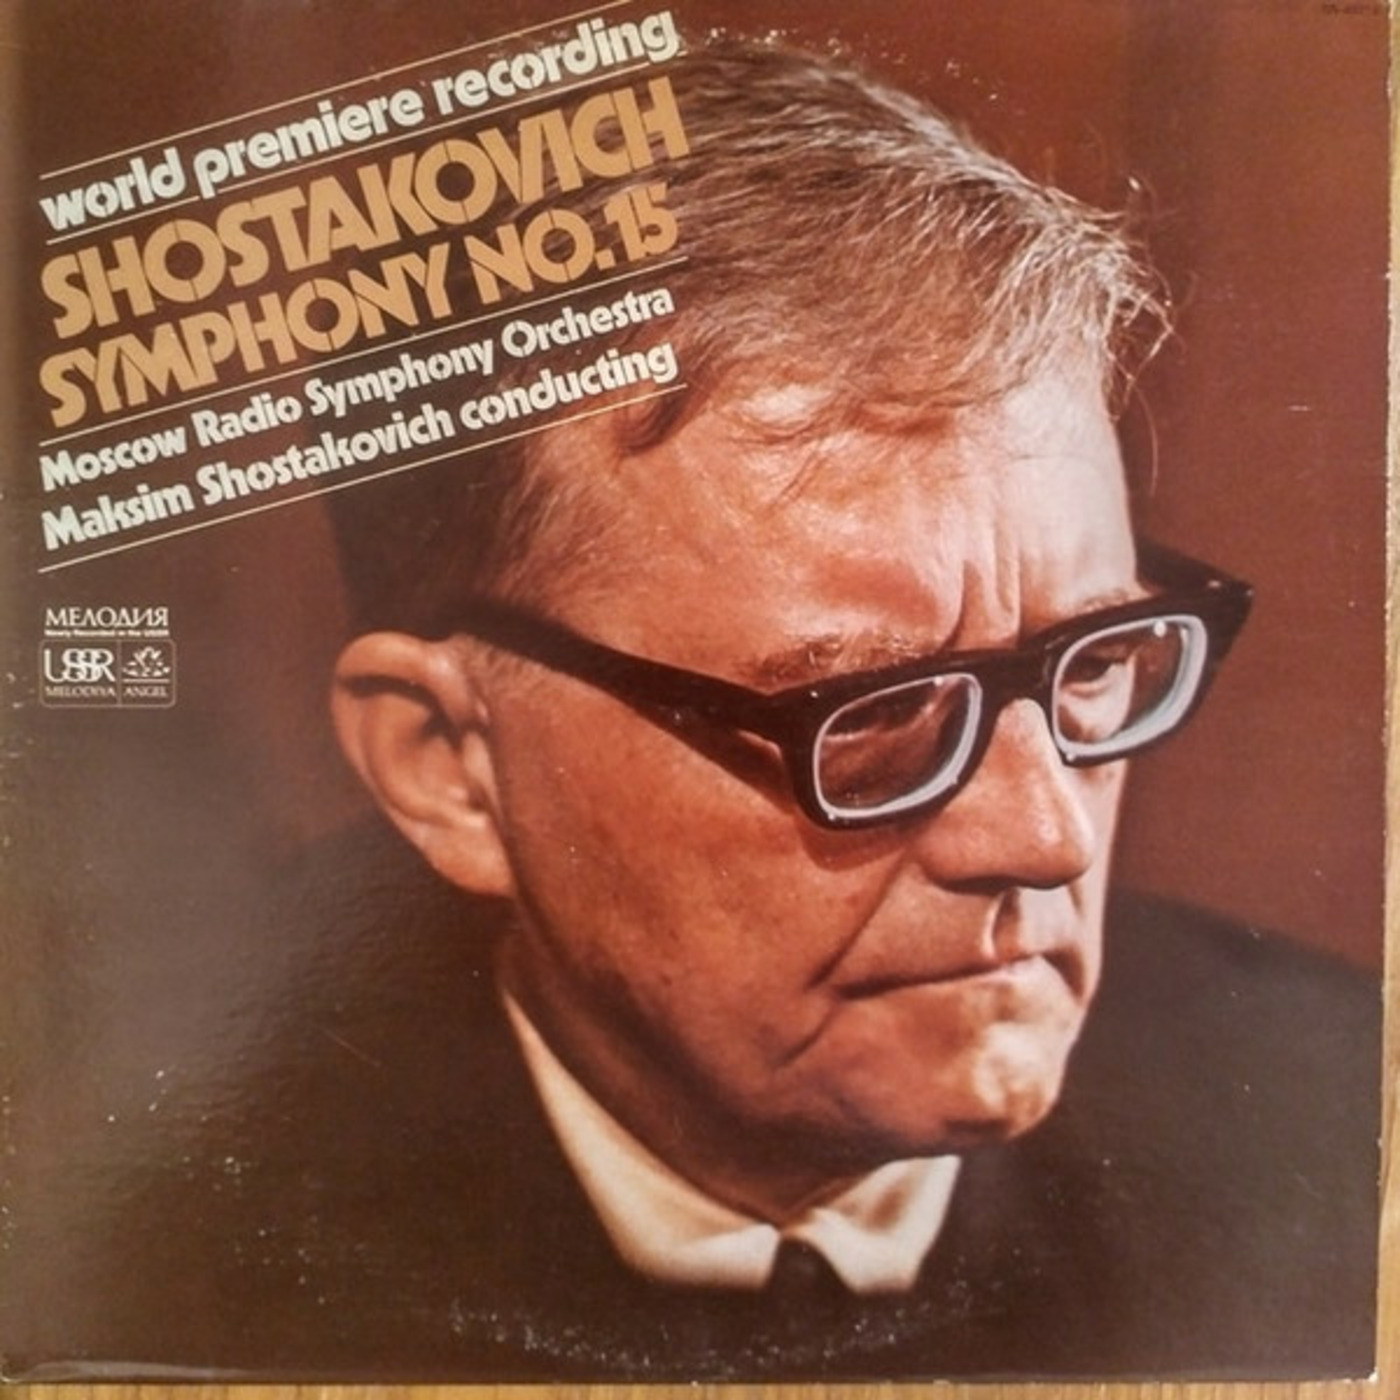 Episode 178: 17178 Shostakovich: Symphony No. 15 in A Major, Op. 141